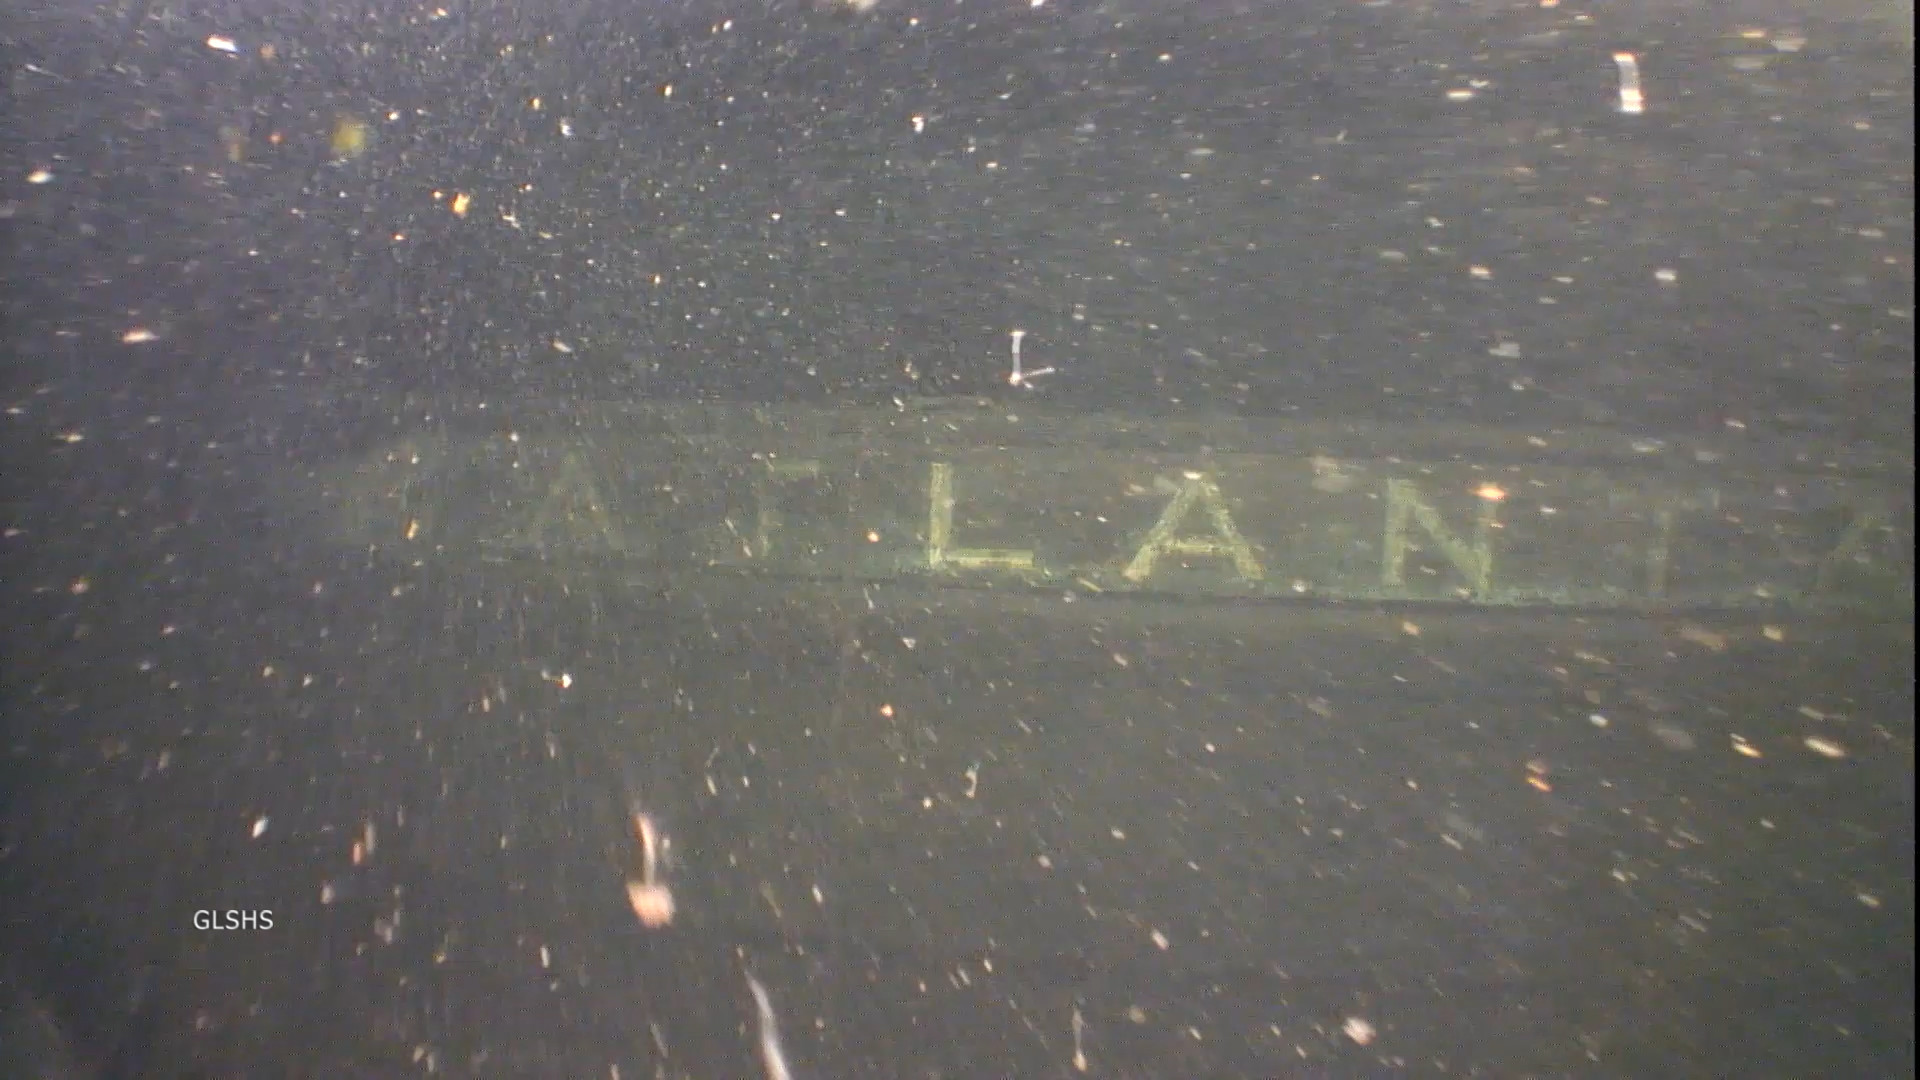 Bảng tên của con tàu Atlanta dưới đáy biển. Ảnh: GLSHS.